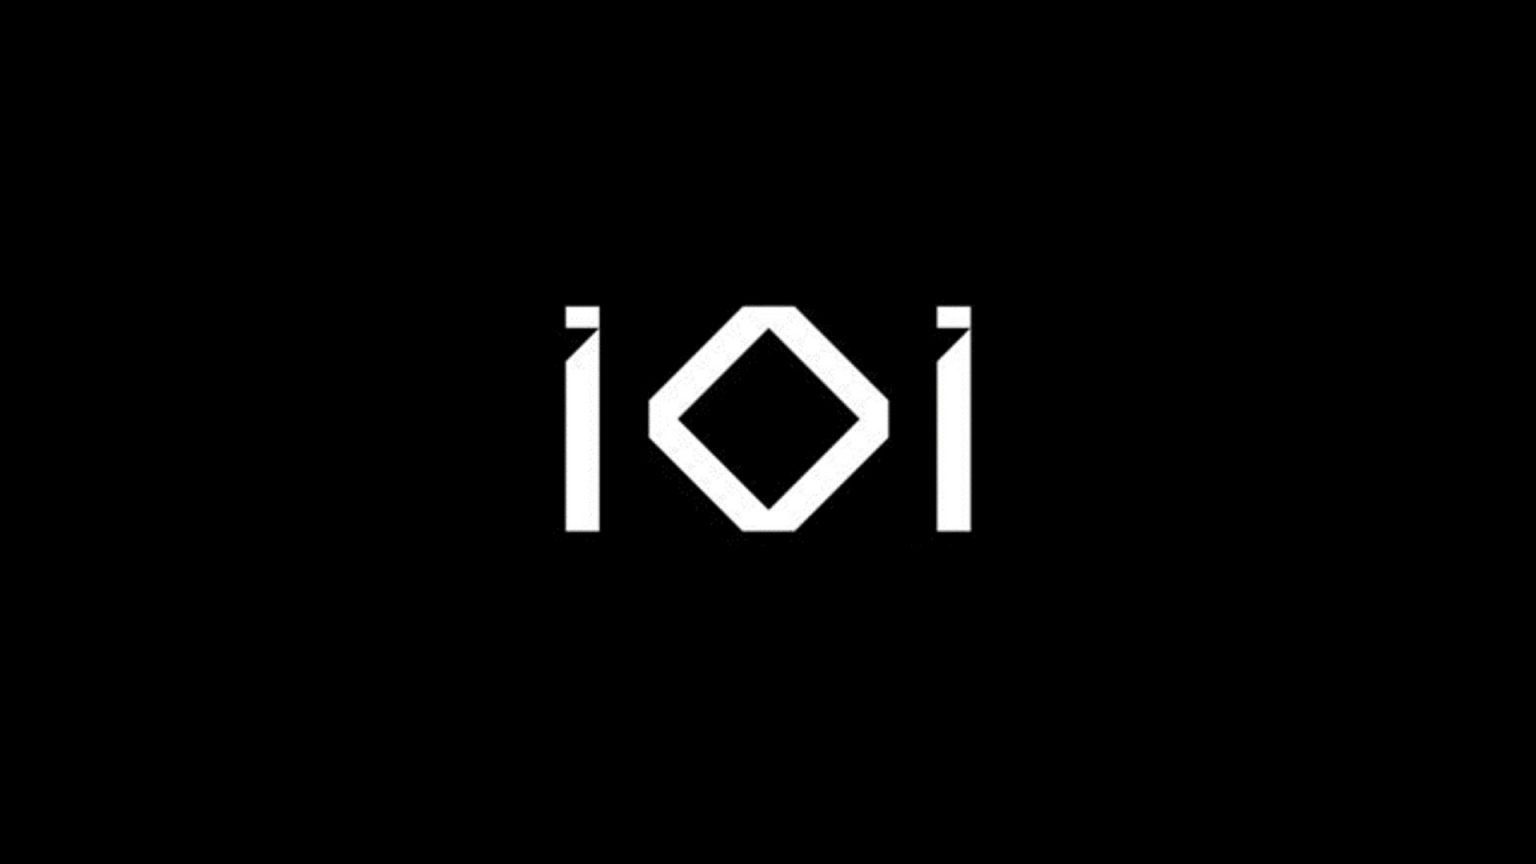 استودیوی IO Interactive در مقطعی تنها با قیمت یک دلار قابل خرید بوده است